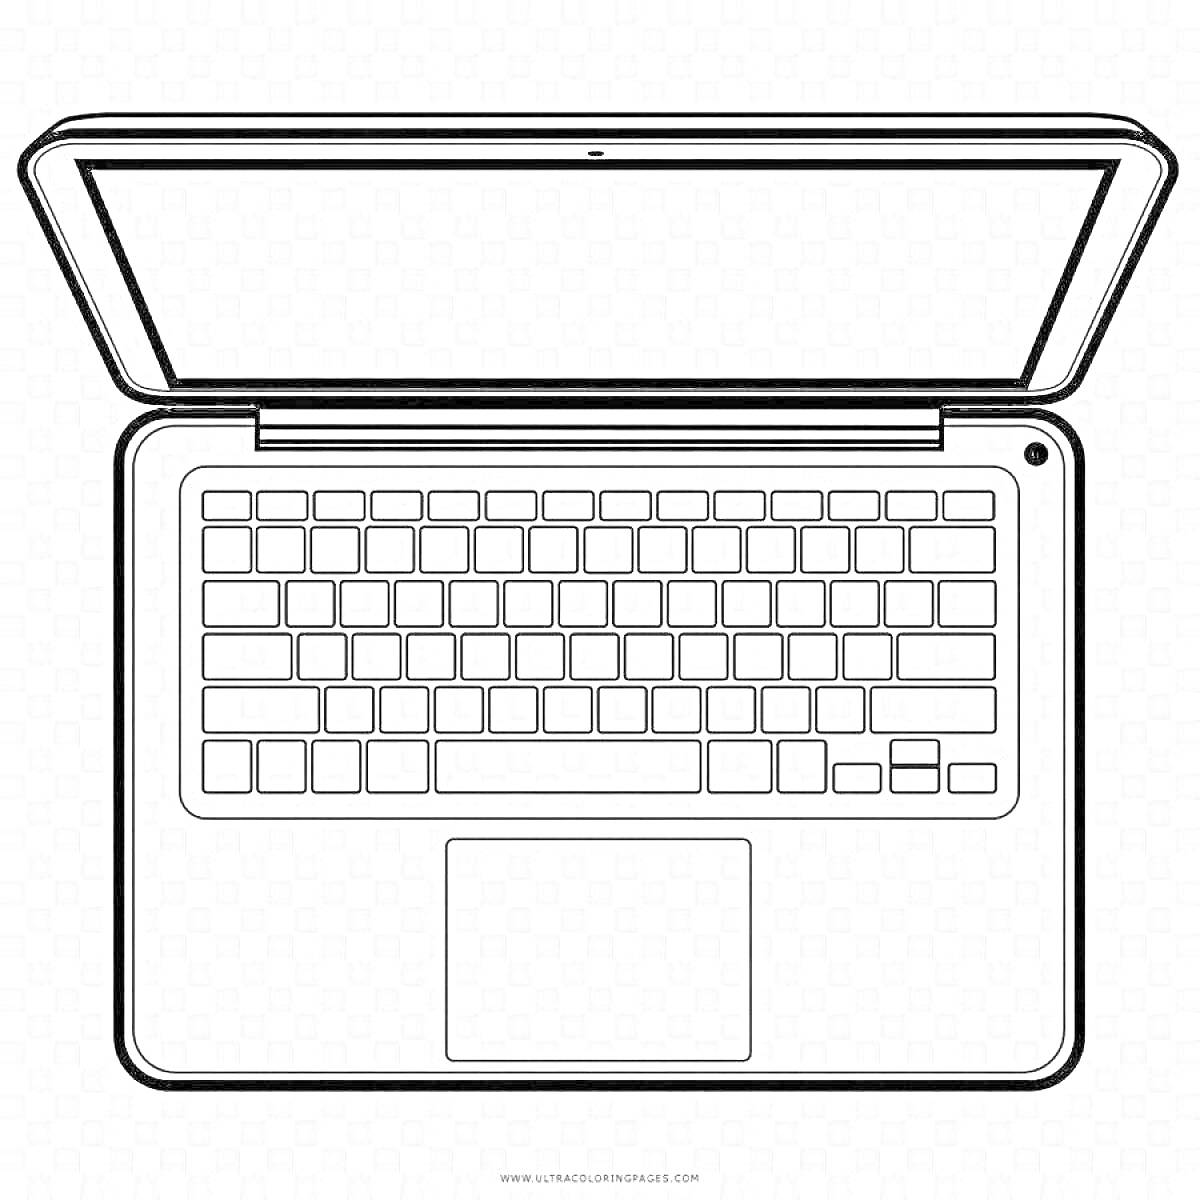 Раскраска Раскраска с изображением клавиатуры ноутбука, экрана и тачпада